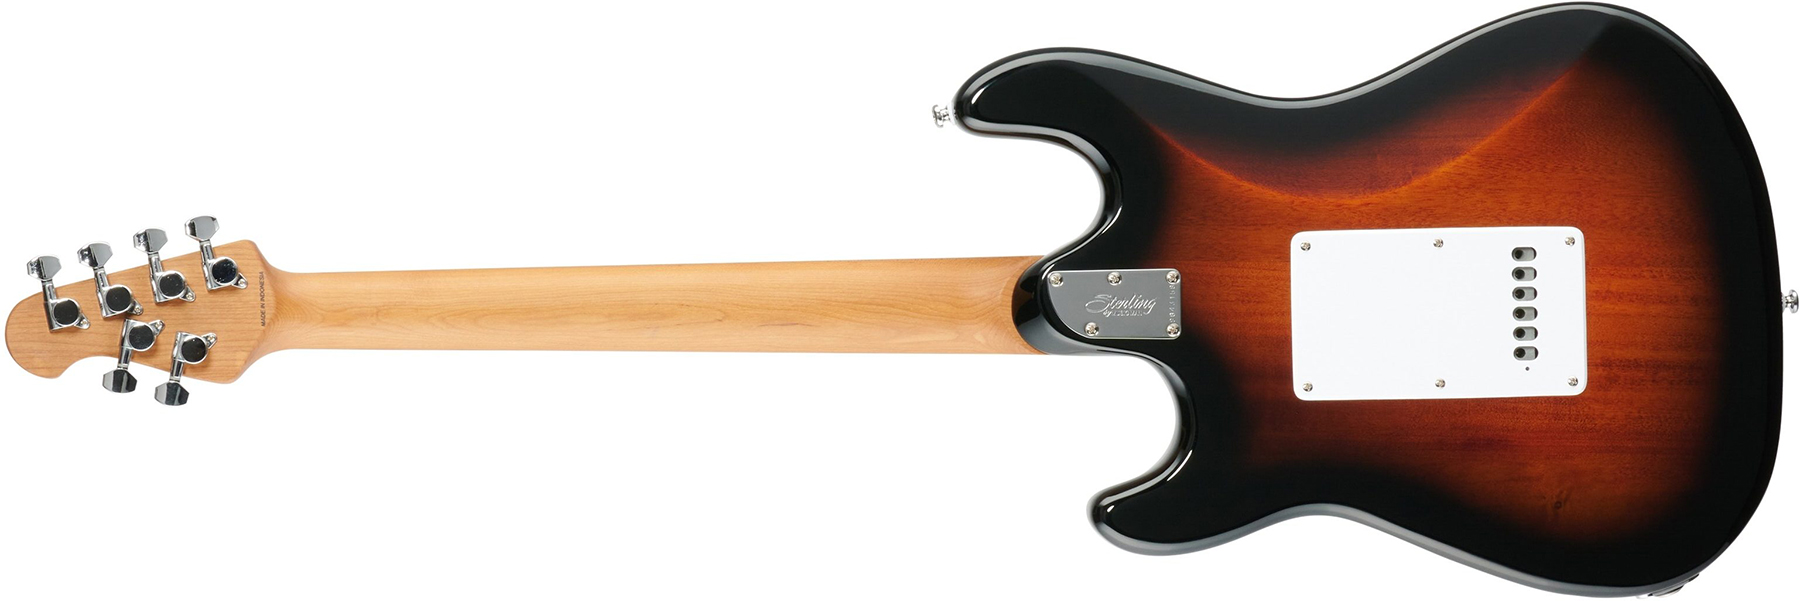 Sterling By Musicman Cutlass Ct50sss 3s Trem Mn - Vintage Sunburst - Elektrische gitaar in Str-vorm - Variation 1